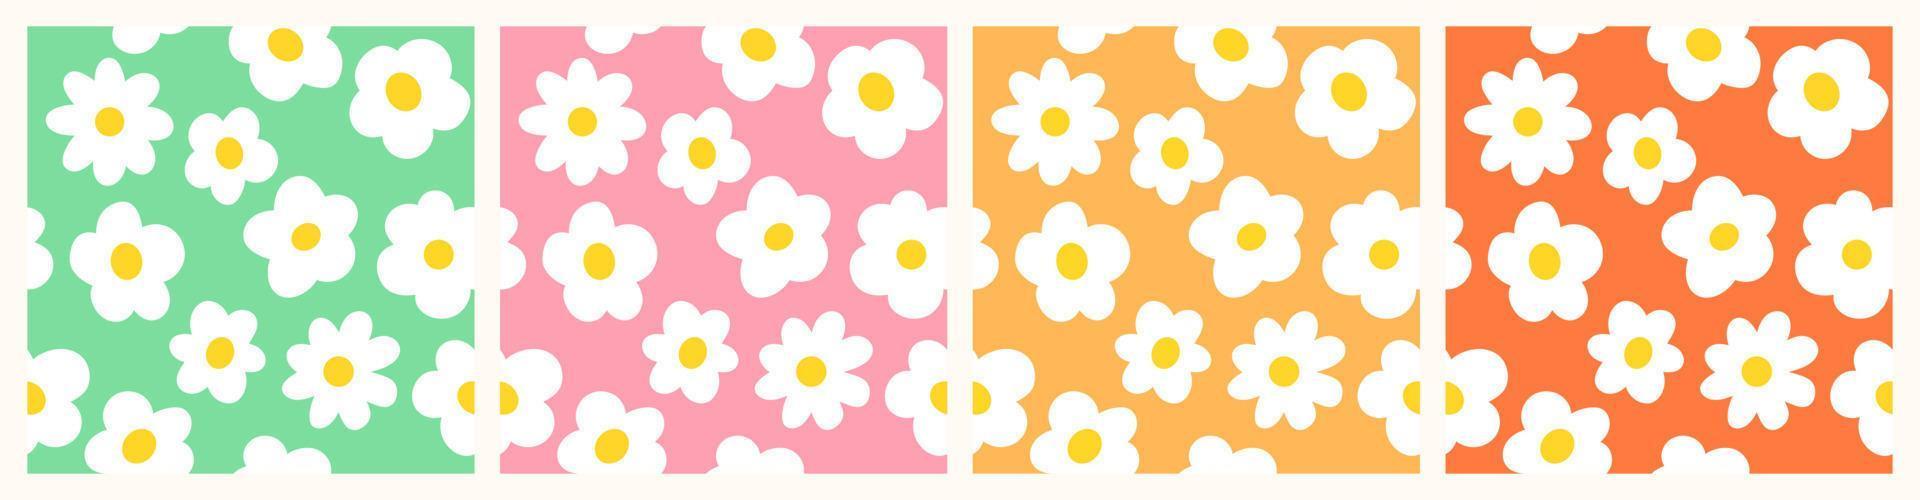 conjunto de flores de manzanilla sobre fondos multicolores, en diseño plano, patrones vectoriales editables sin costuras. colección de estampados florales sencillos, tonos de amarillo, rosa y verde. vector